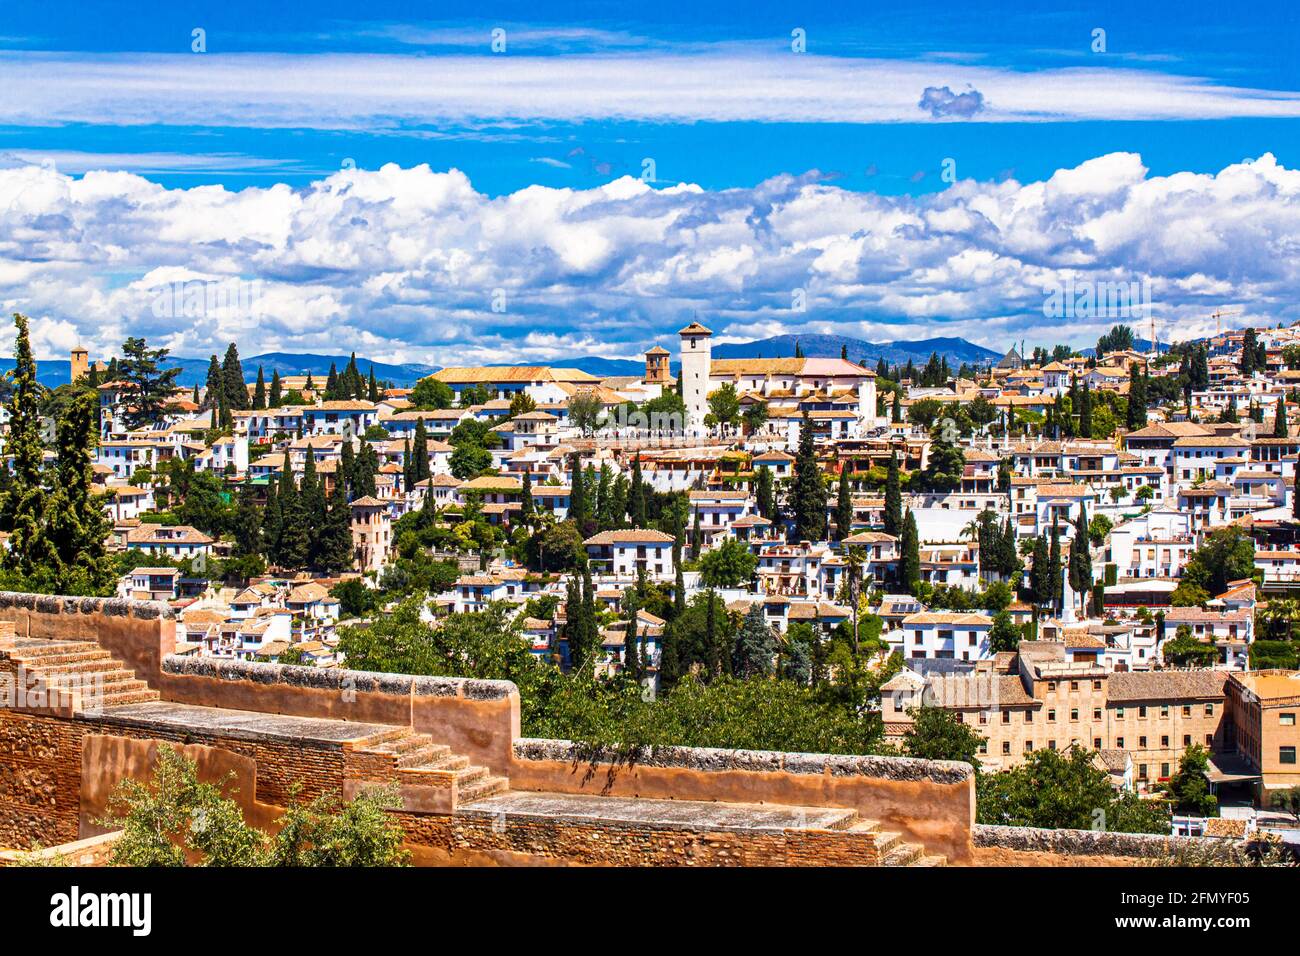 Ein Blick auf die Bezirke Albaicin und Sacromonte mit den Bergen der Sierra Nevada im Hintergrund. Granada, Andalusien, Spanien. Stockfoto